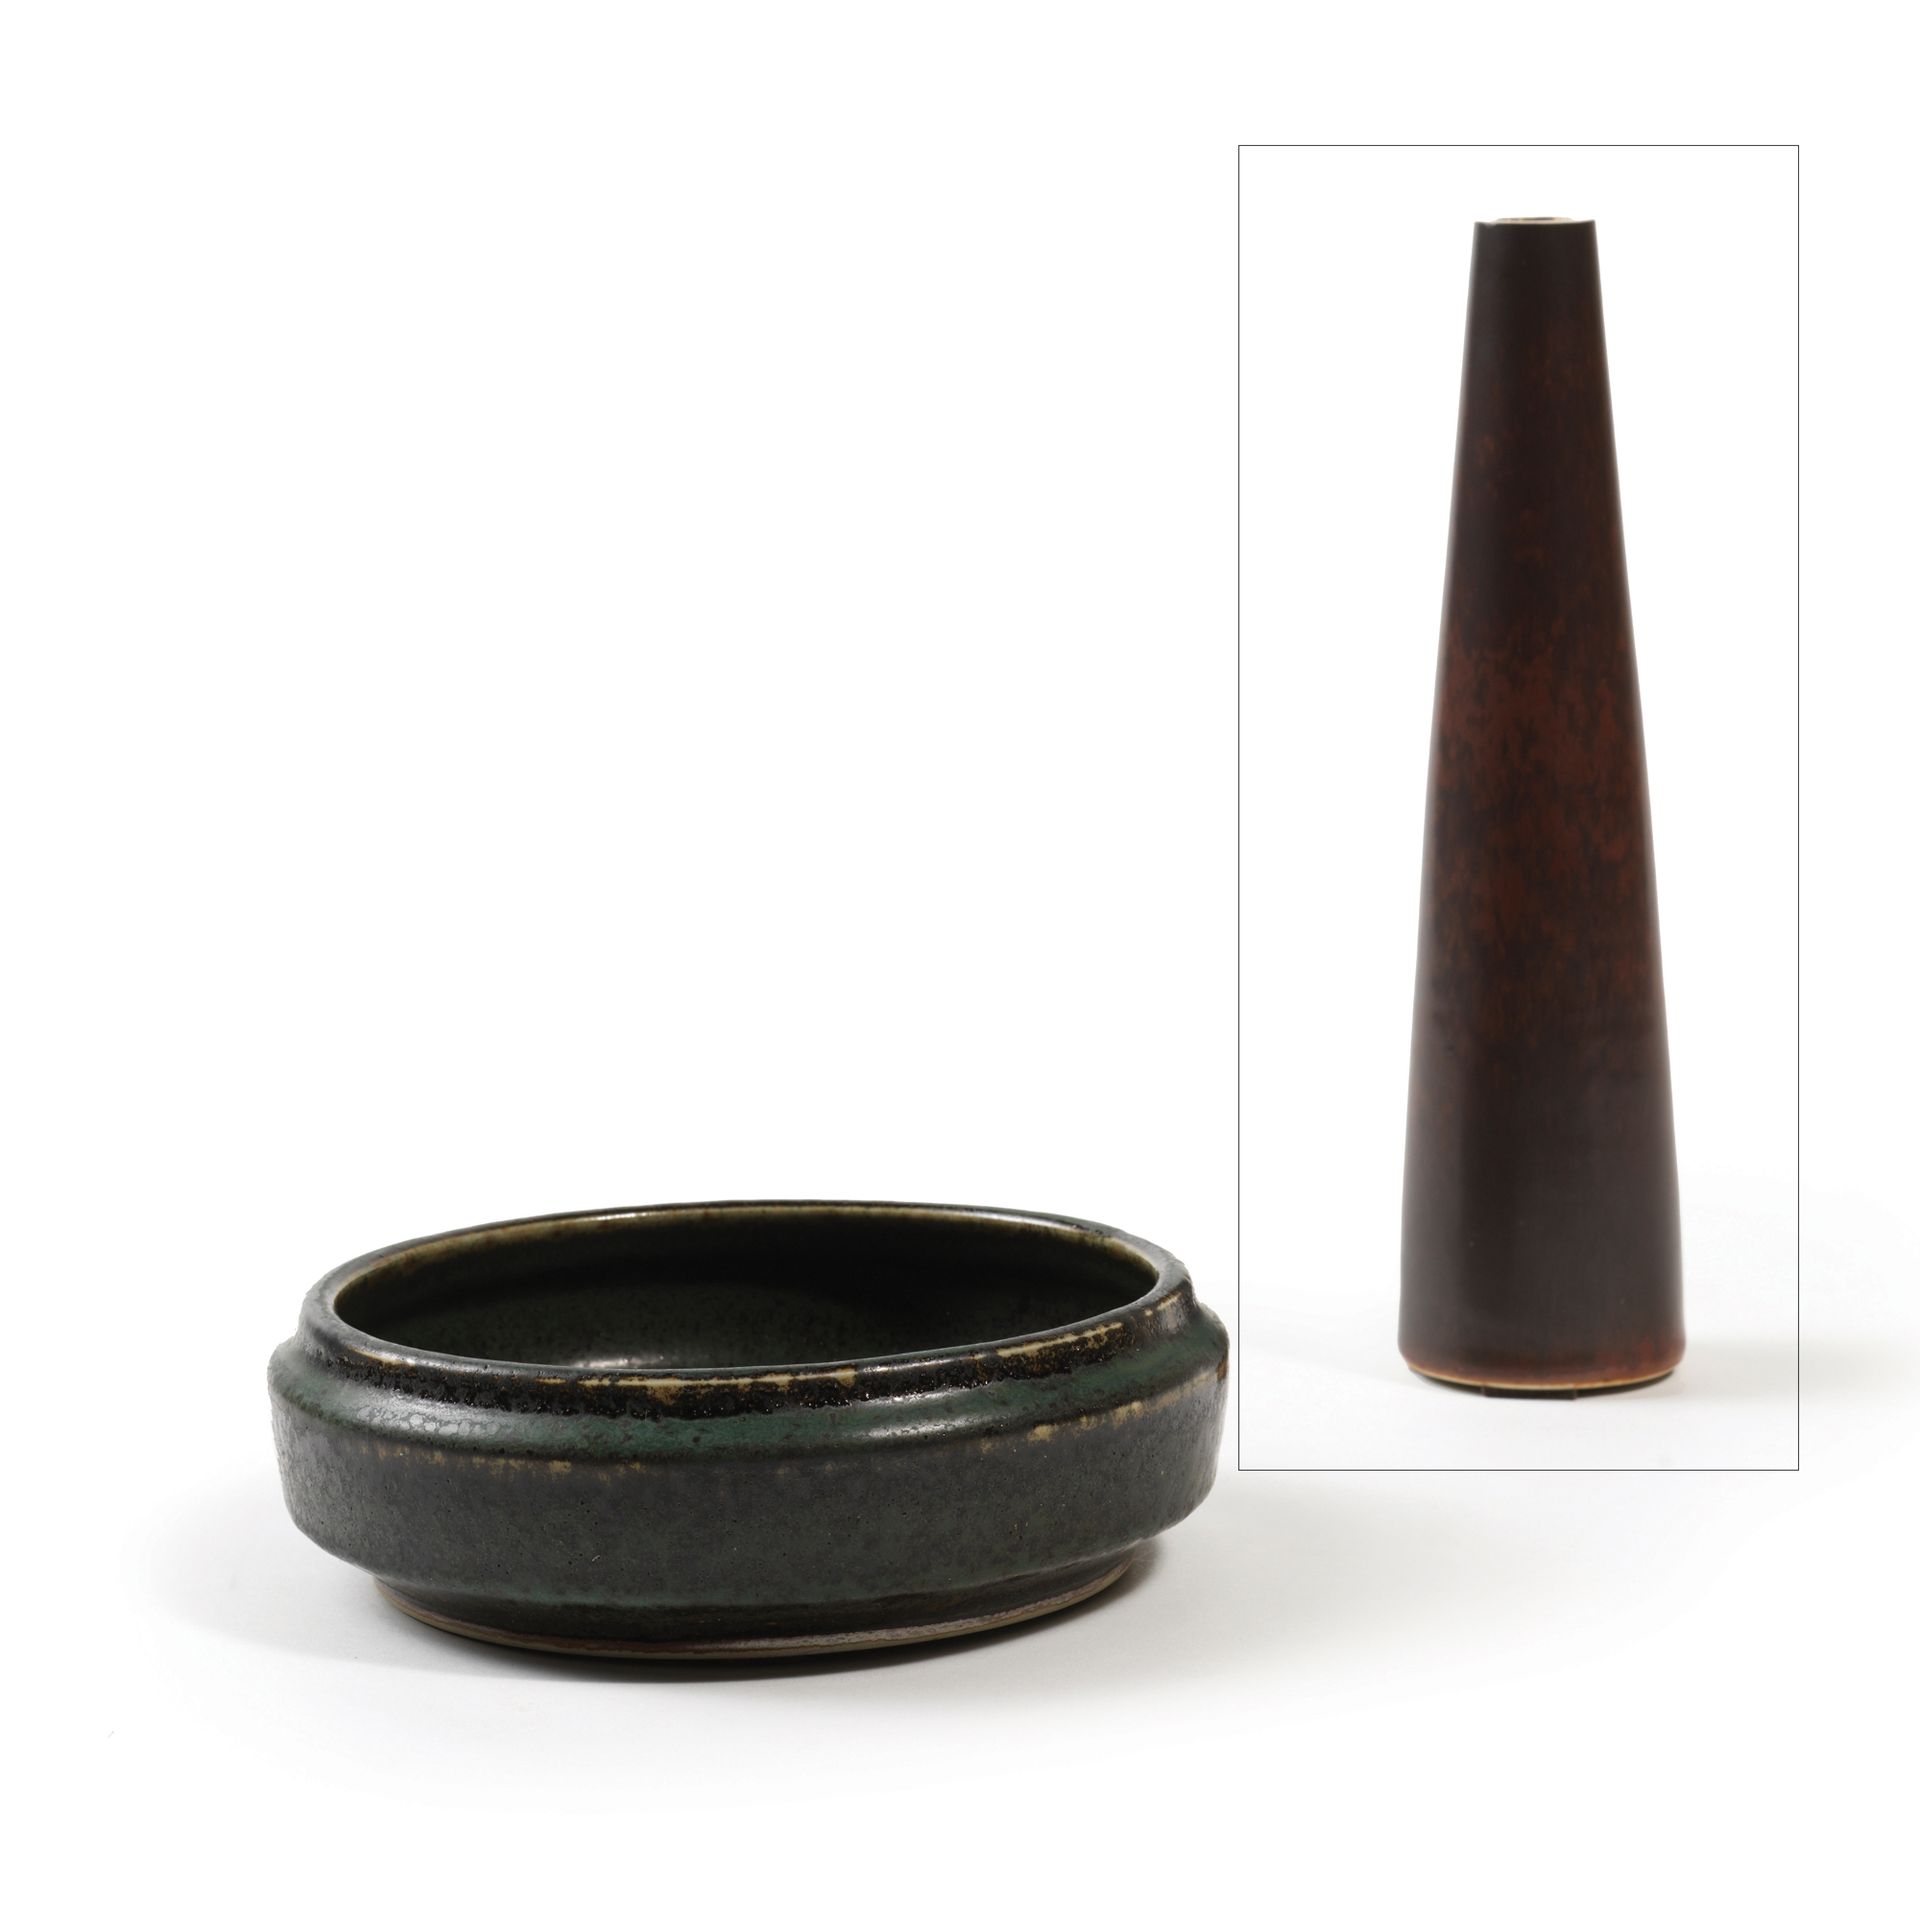 Carl Harry STALHANE (1920-1990) Vase conique, vers 1950
Émail brun
Manufacture d&hellip;